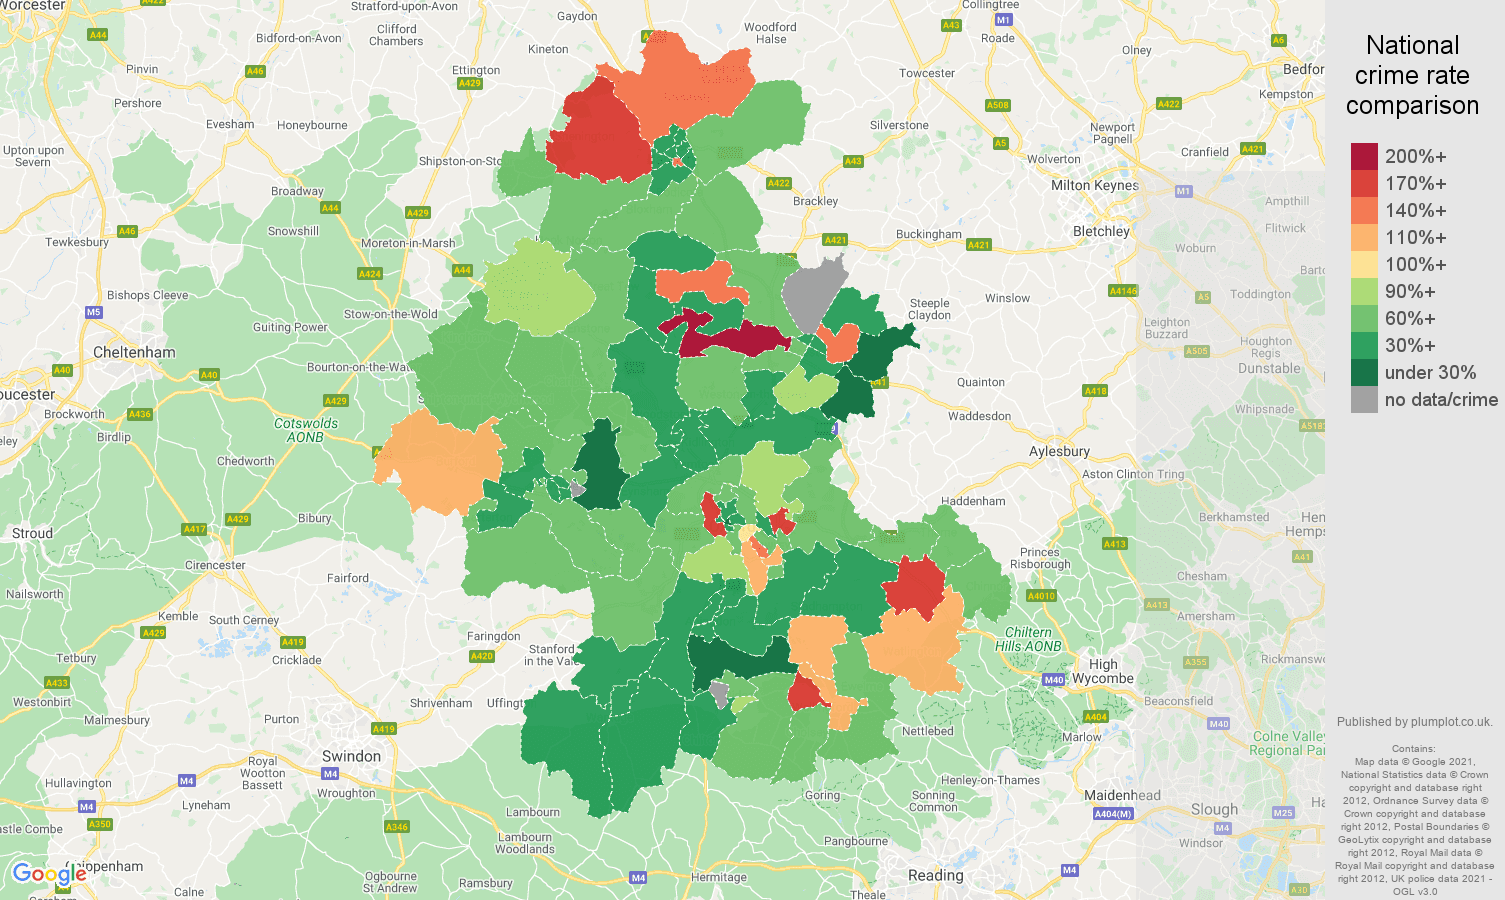 Oxford burglary crime rate comparison map